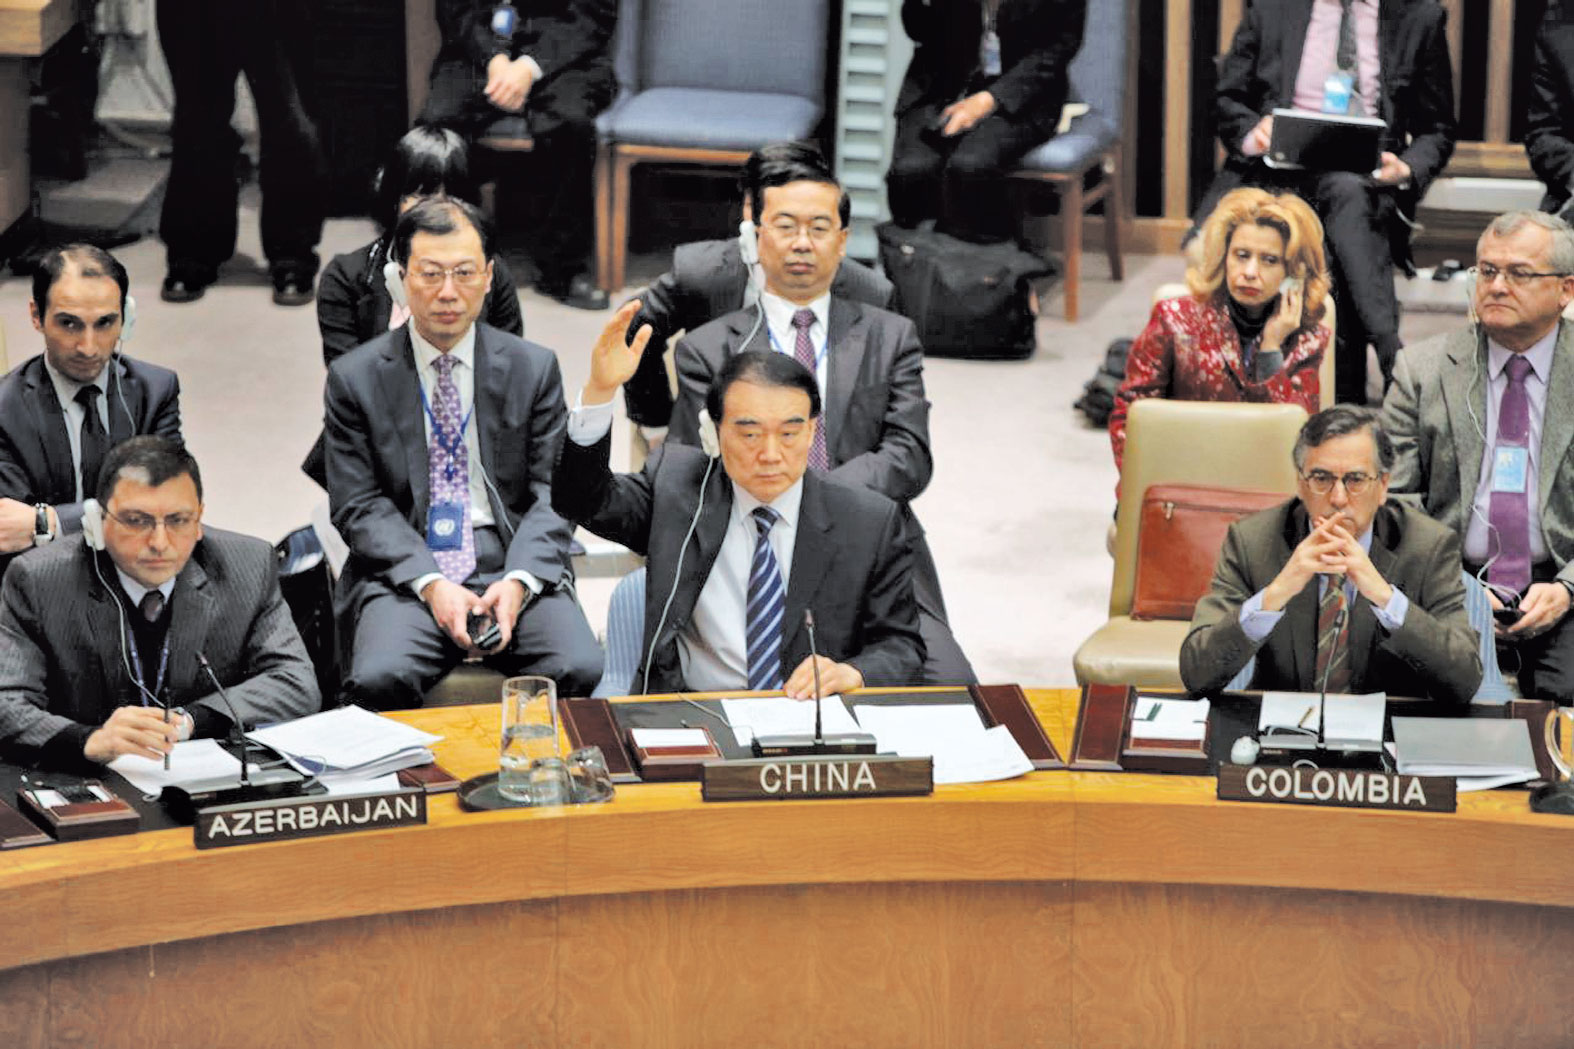 Đại diện của Trung Quốc (giữa) sử dụng quyền phủ quyết trong một phiên họp bàn về tình hình Syria ở HĐBA LHQ  - Ảnh: Reuters